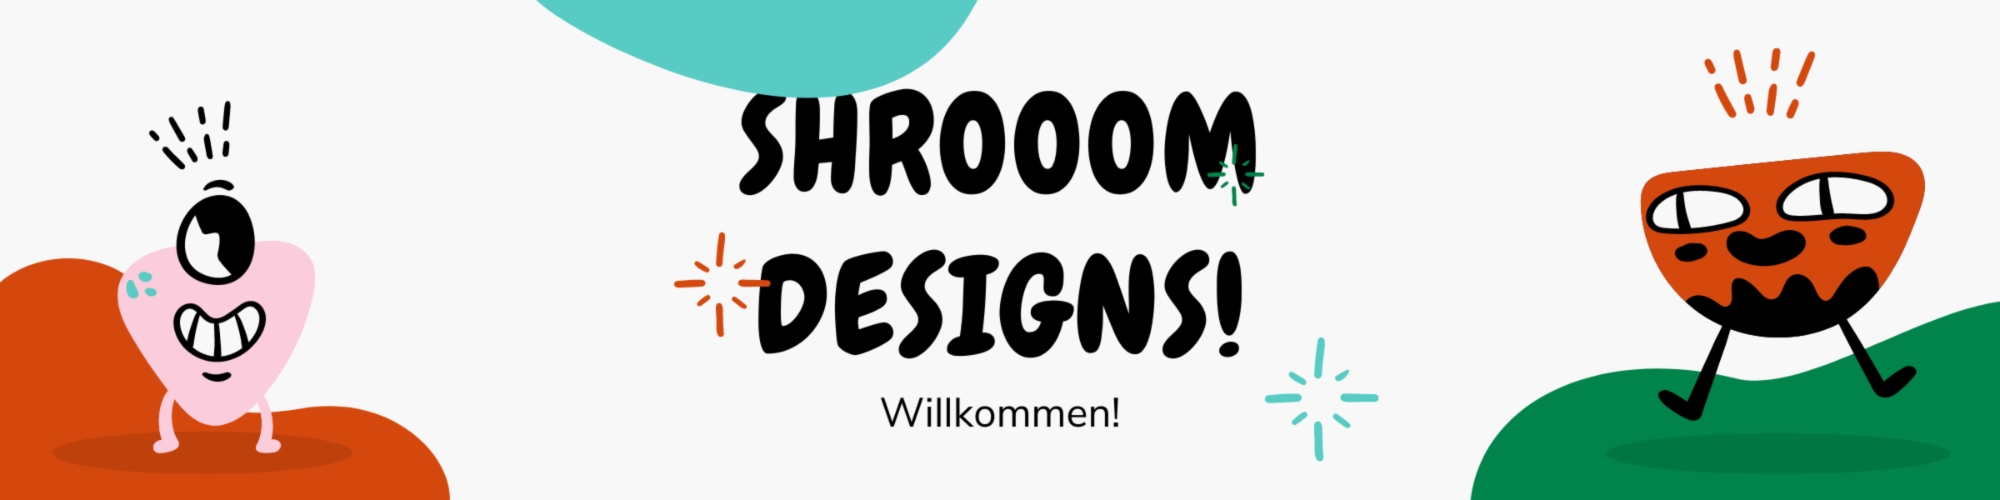 Showroom - shrooom